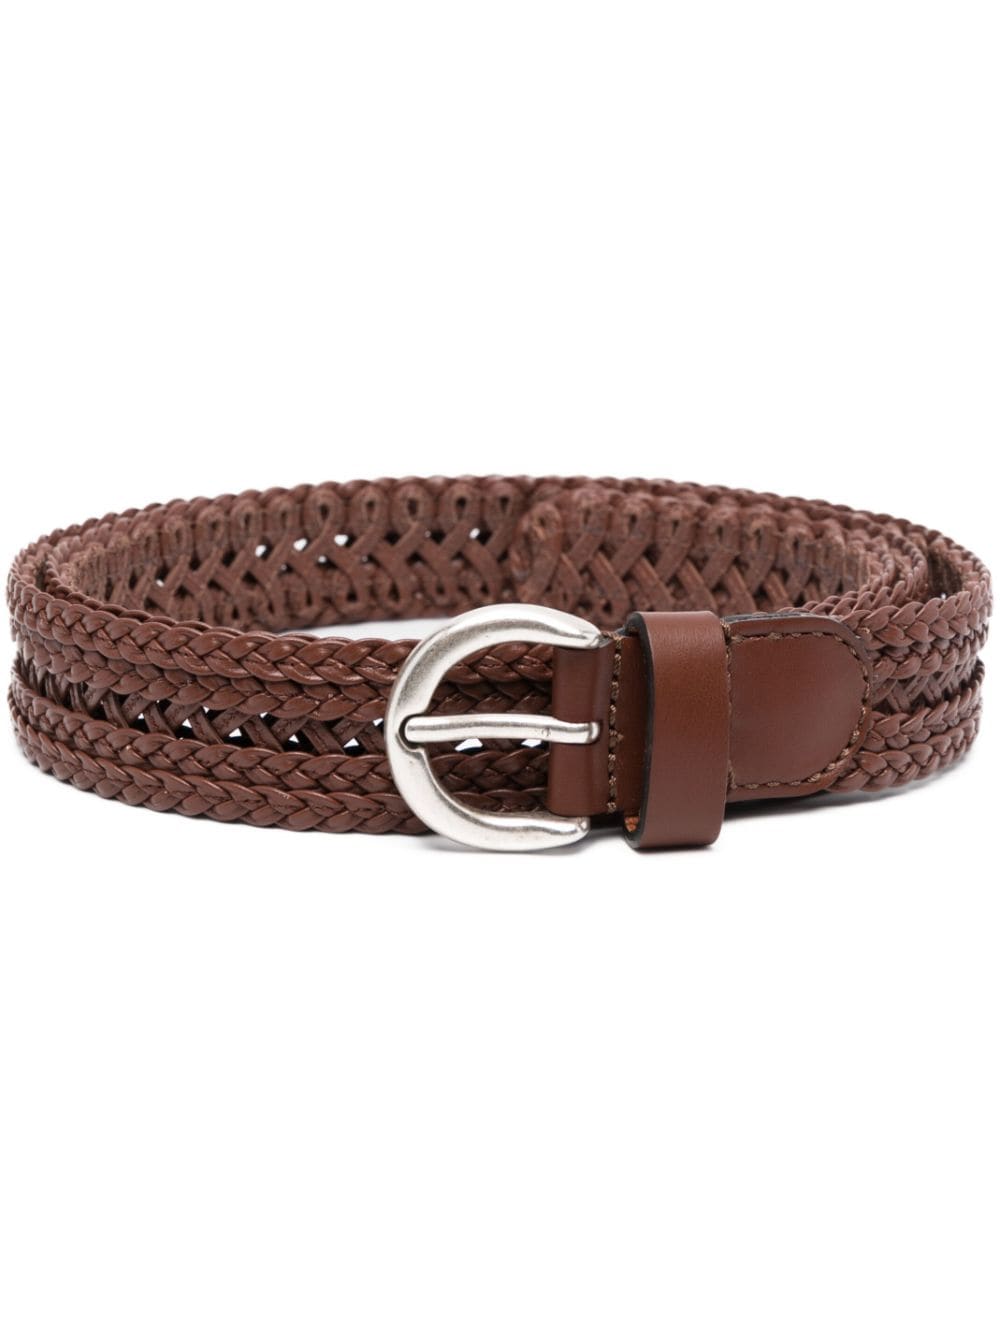 ETRO Woven Leather Belt - Farfetch